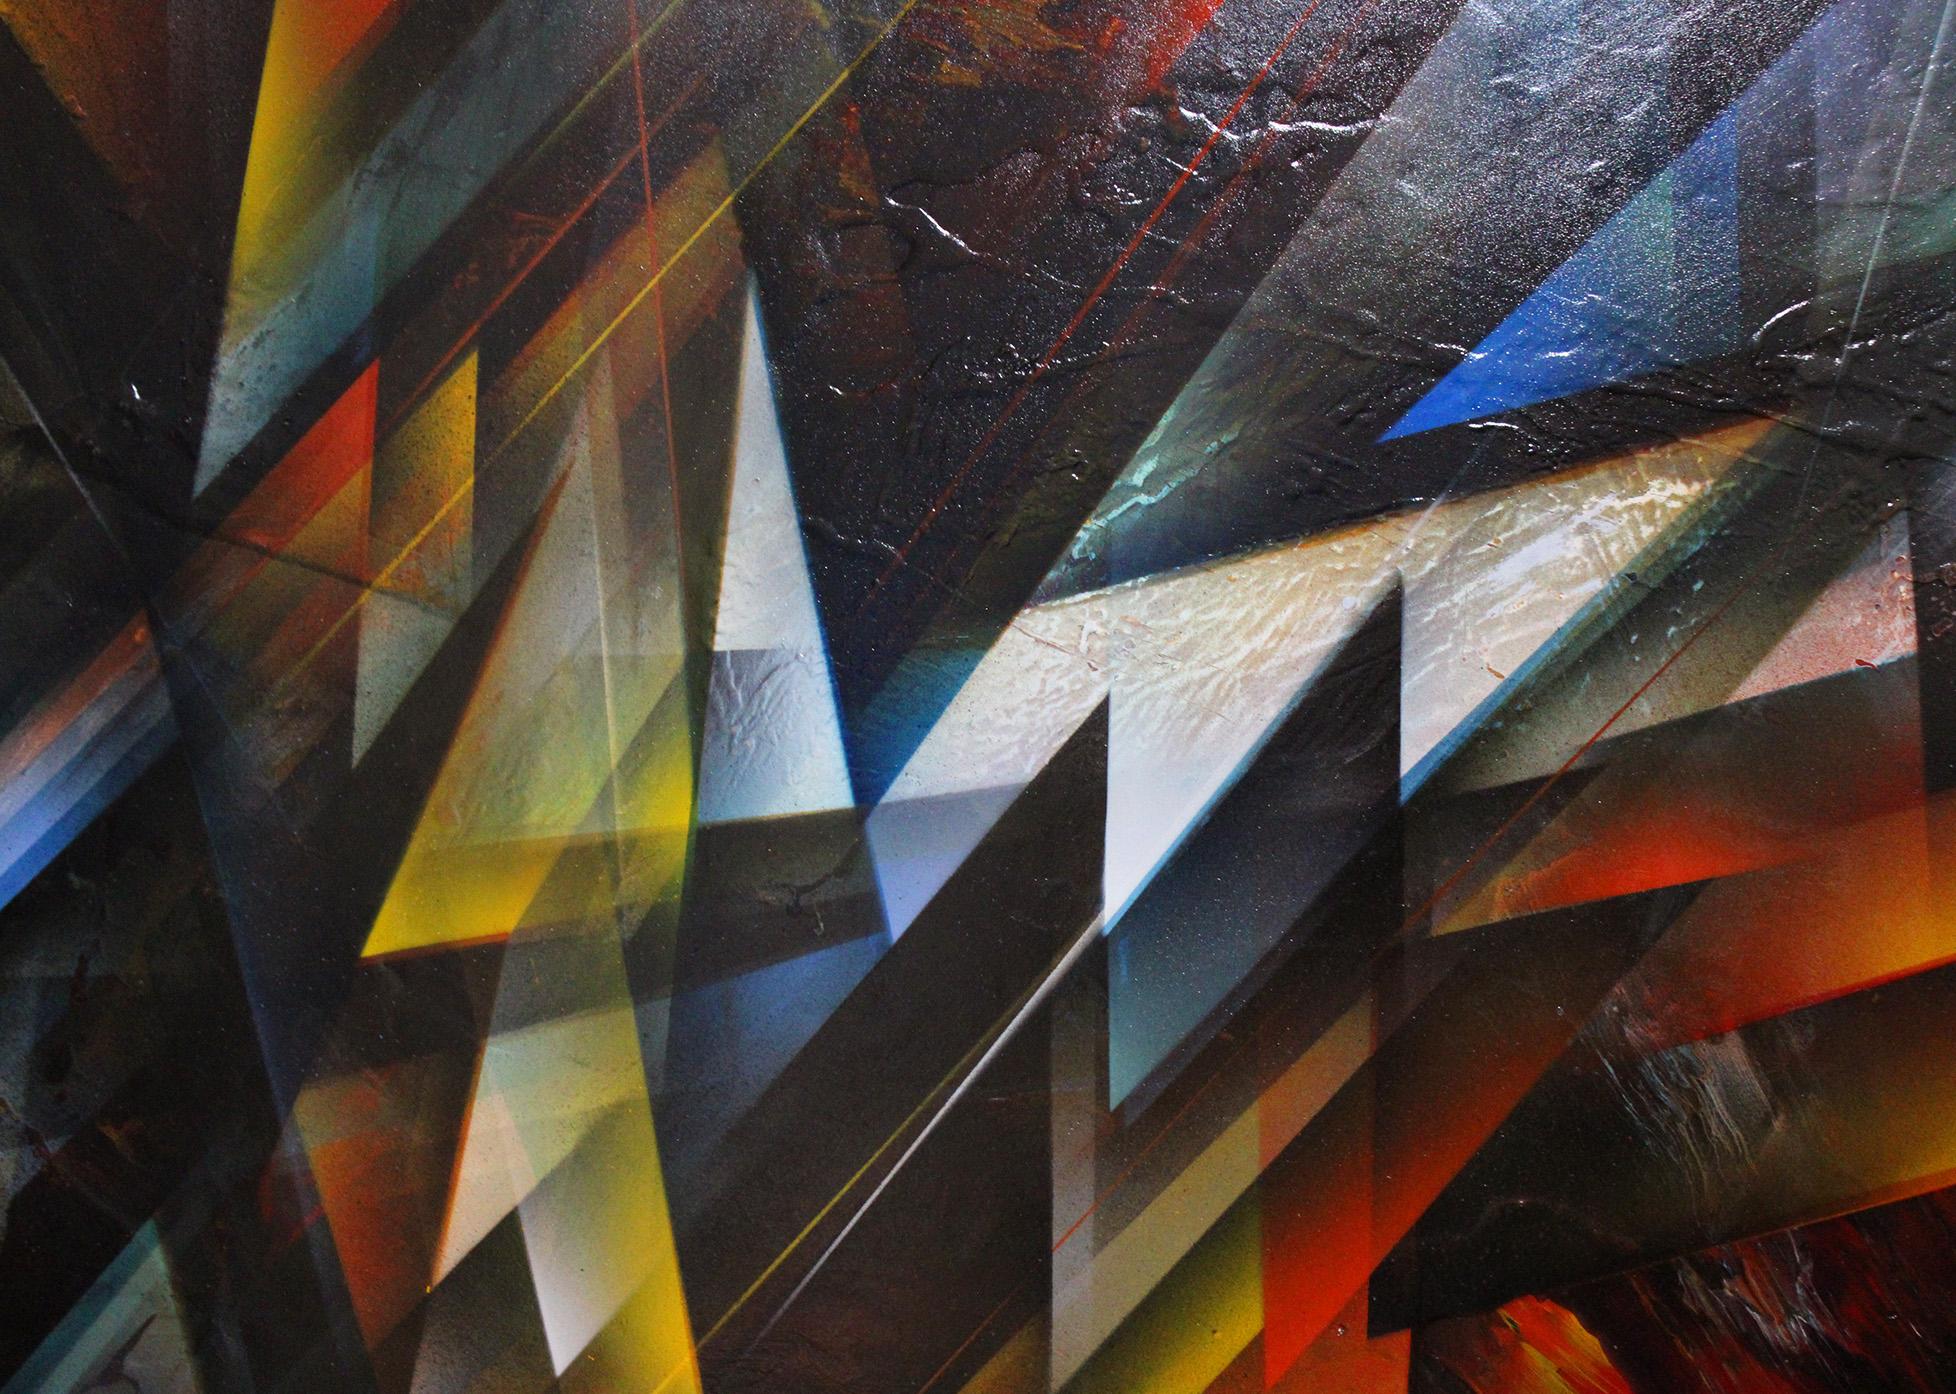 Kaleidoscopio - Painting by Leonardo Nierman